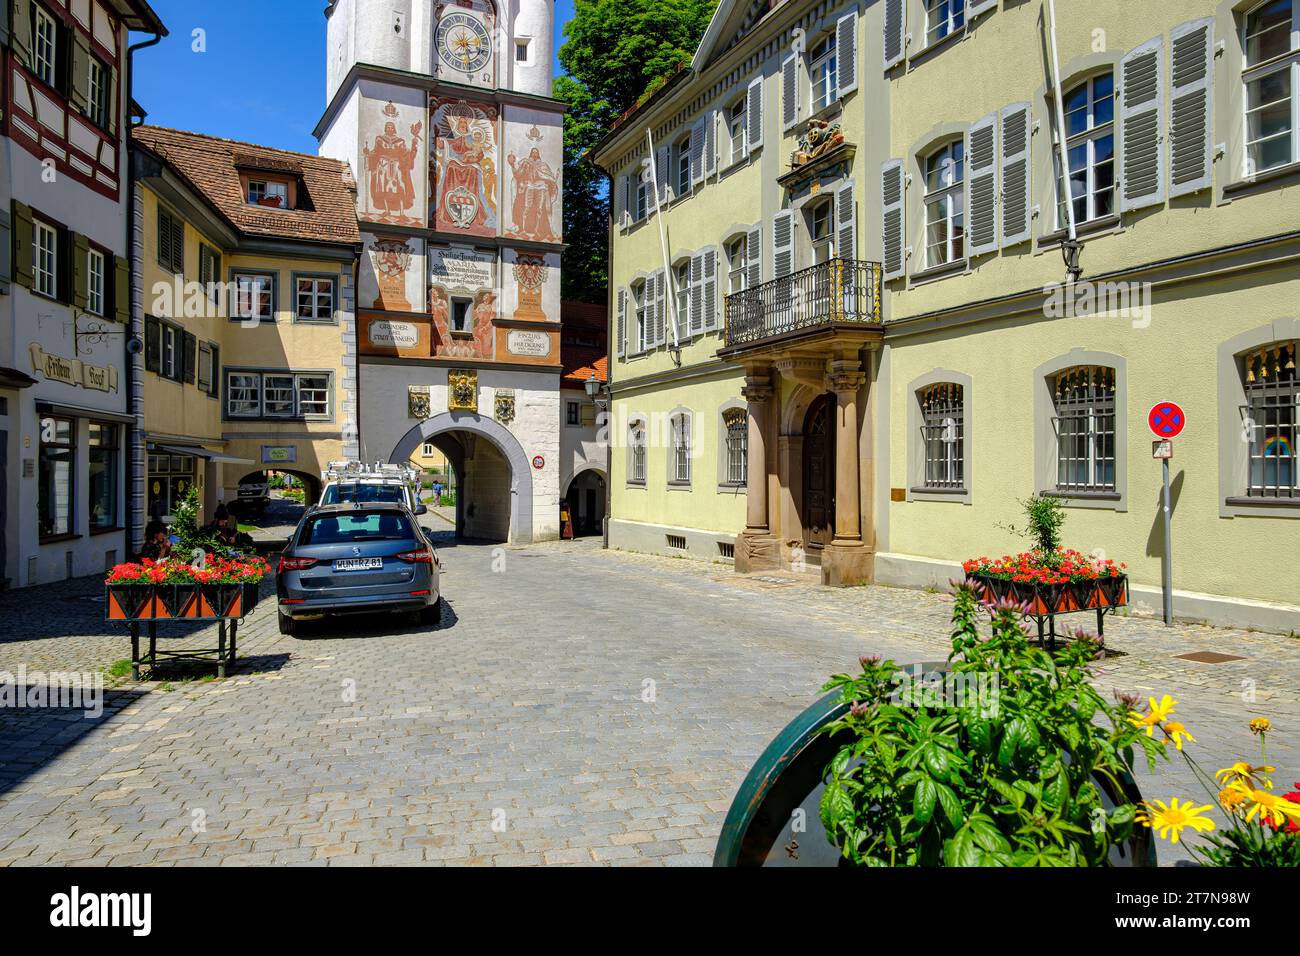 Frauentor du 14e siècle, également connu sous le nom de porte de Ravensburg, dans la vieille ville de Wangen im Allgäu, haute-Souabe, Allemagne. Banque D'Images